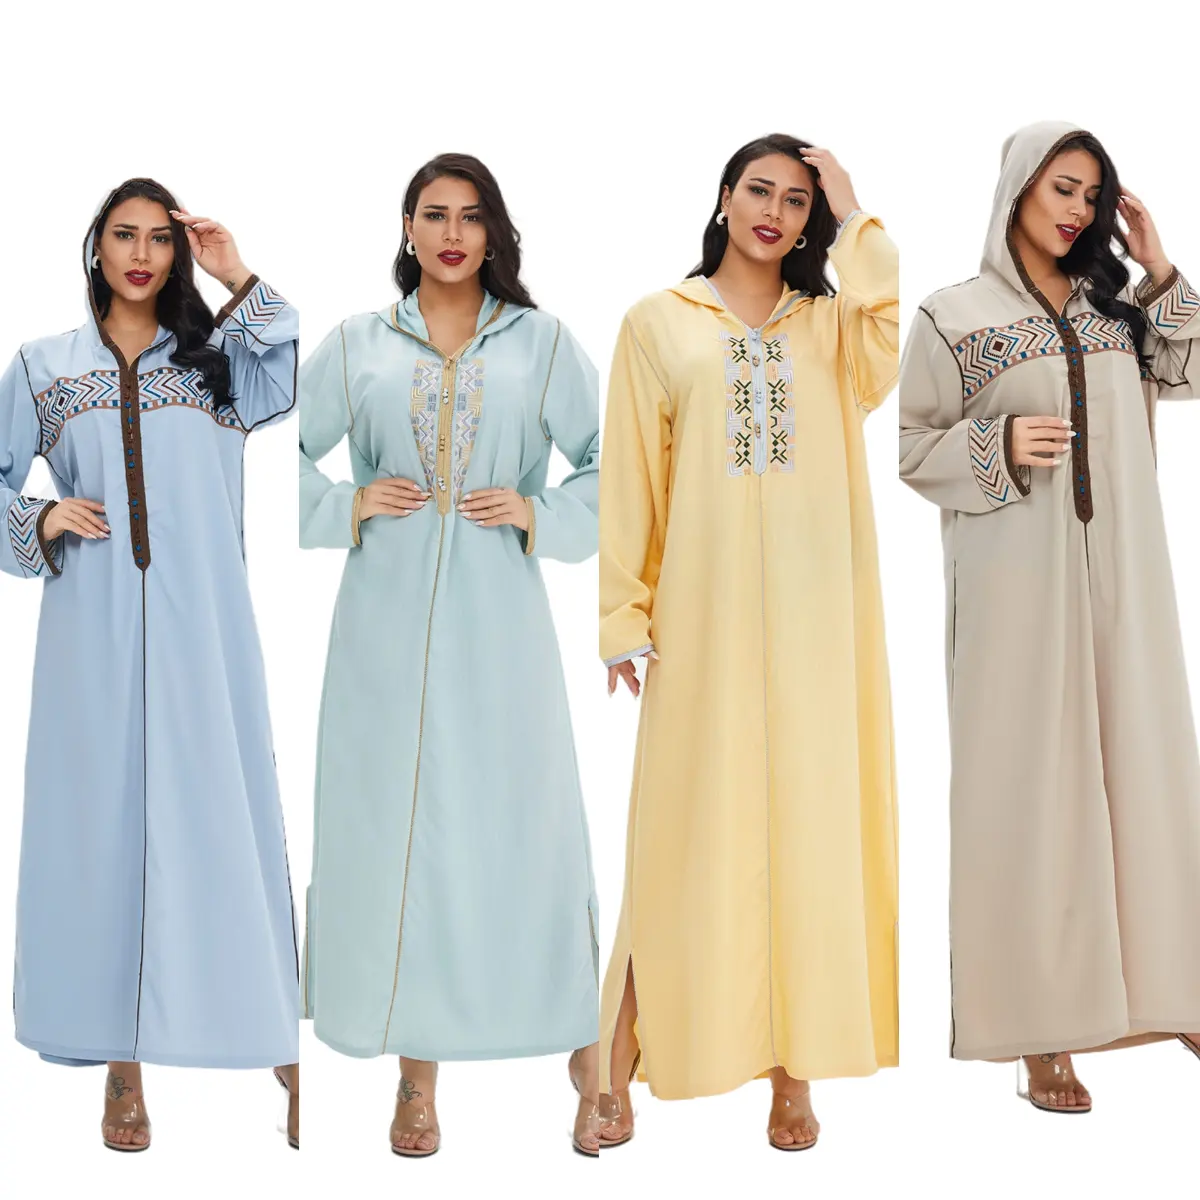 Casaco de manga longa bordado, moletom casual de manga longa com capuz, robe, kaftan, dubai, marrocos, islâmicos, novo, 2021